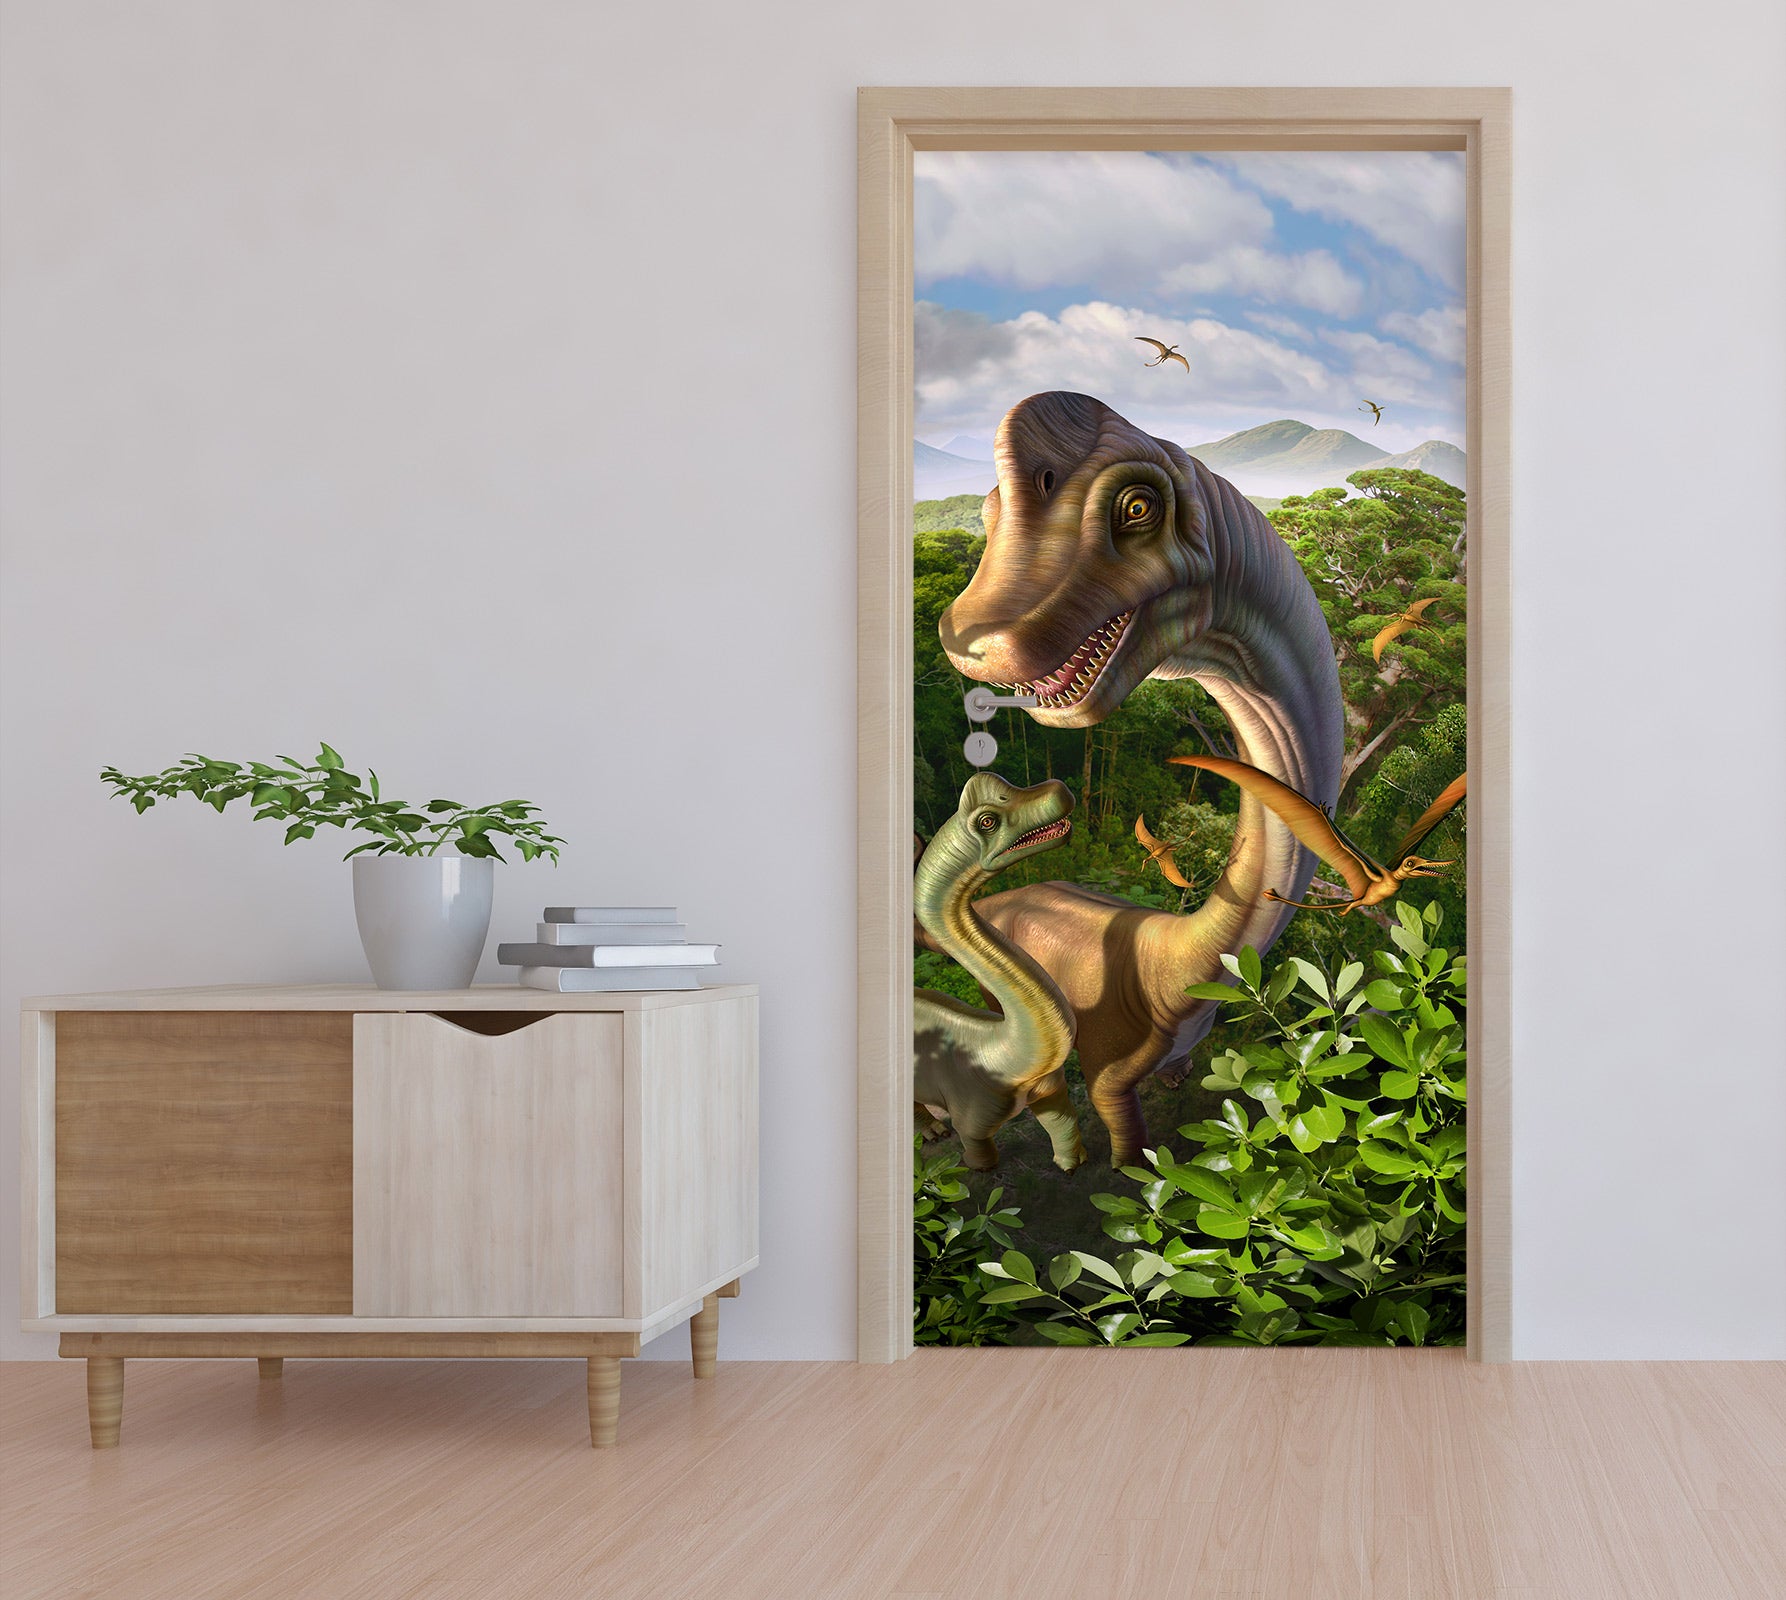 3D Jungle Dinosaur 112116 Jerry LoFaro Door Mural